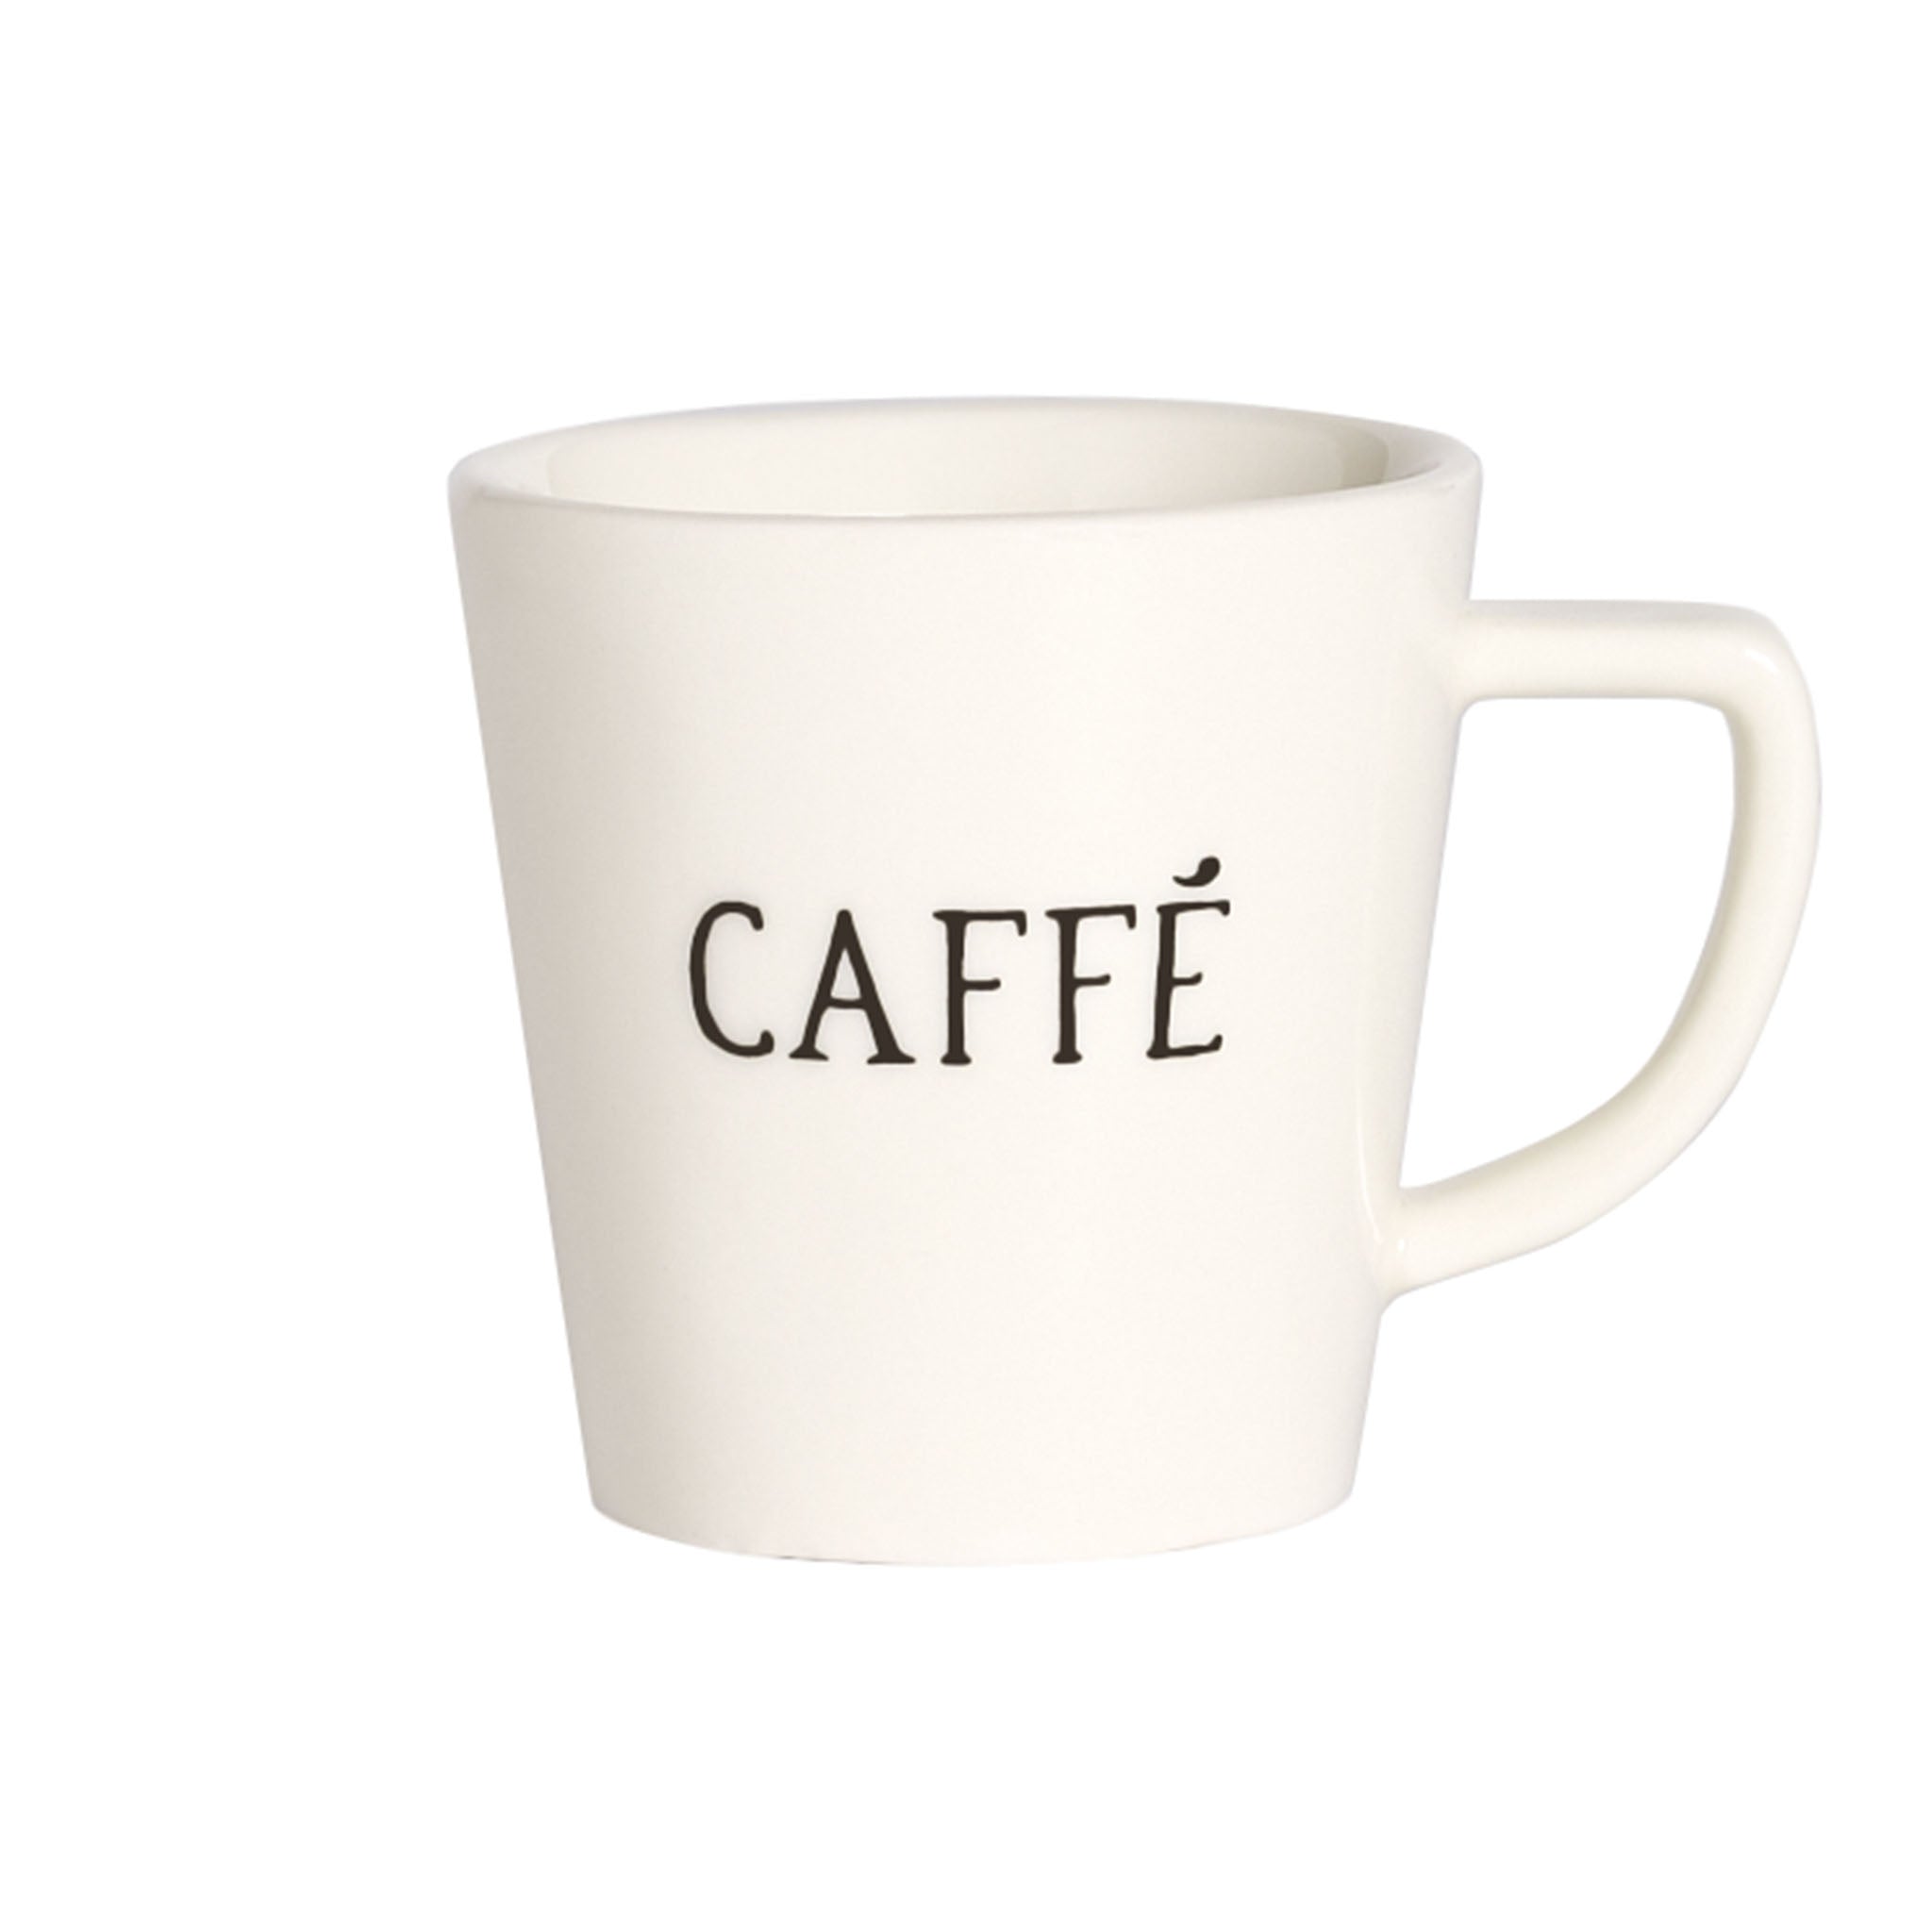 Caffè Espresso Cup - Set of 2